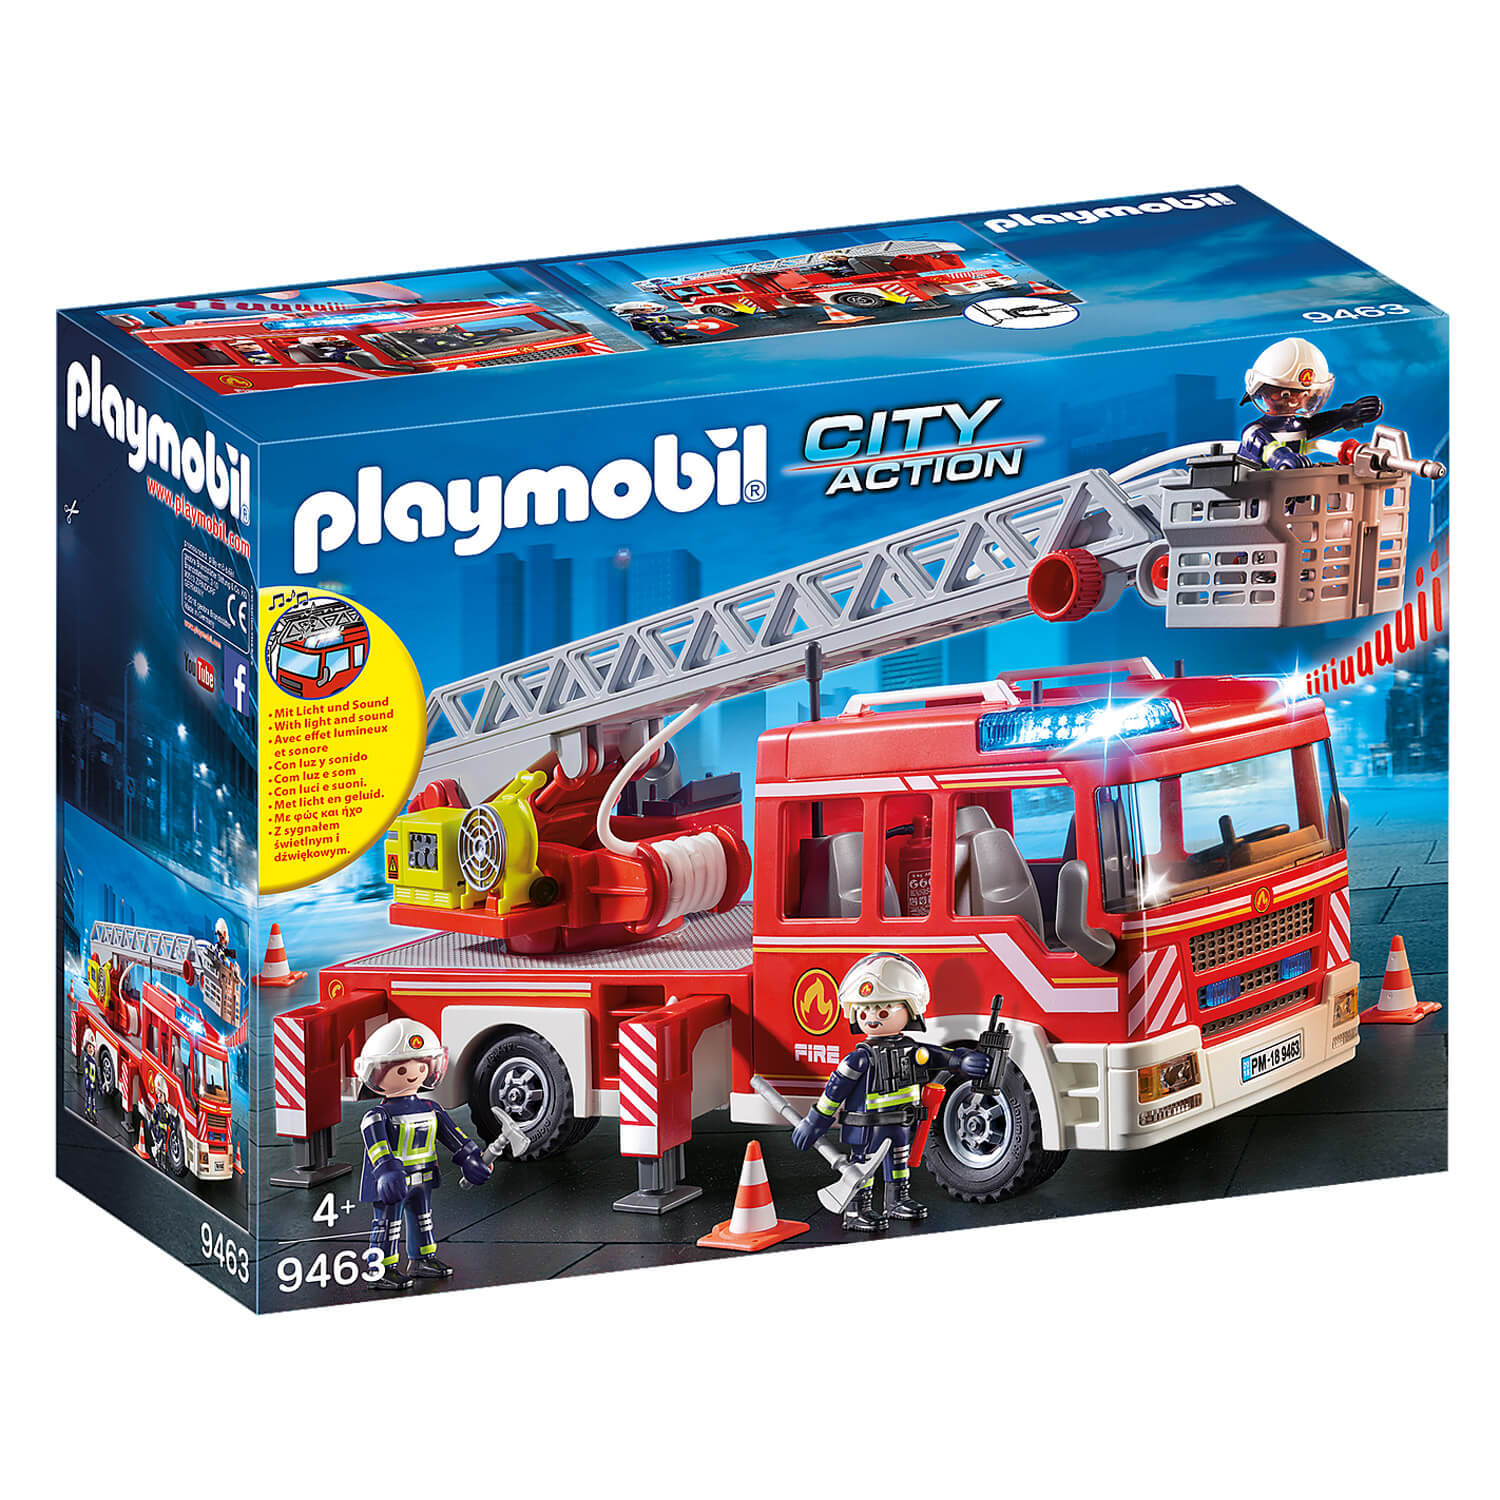 Camion pompier Janod - Camion et voiture de police jouet